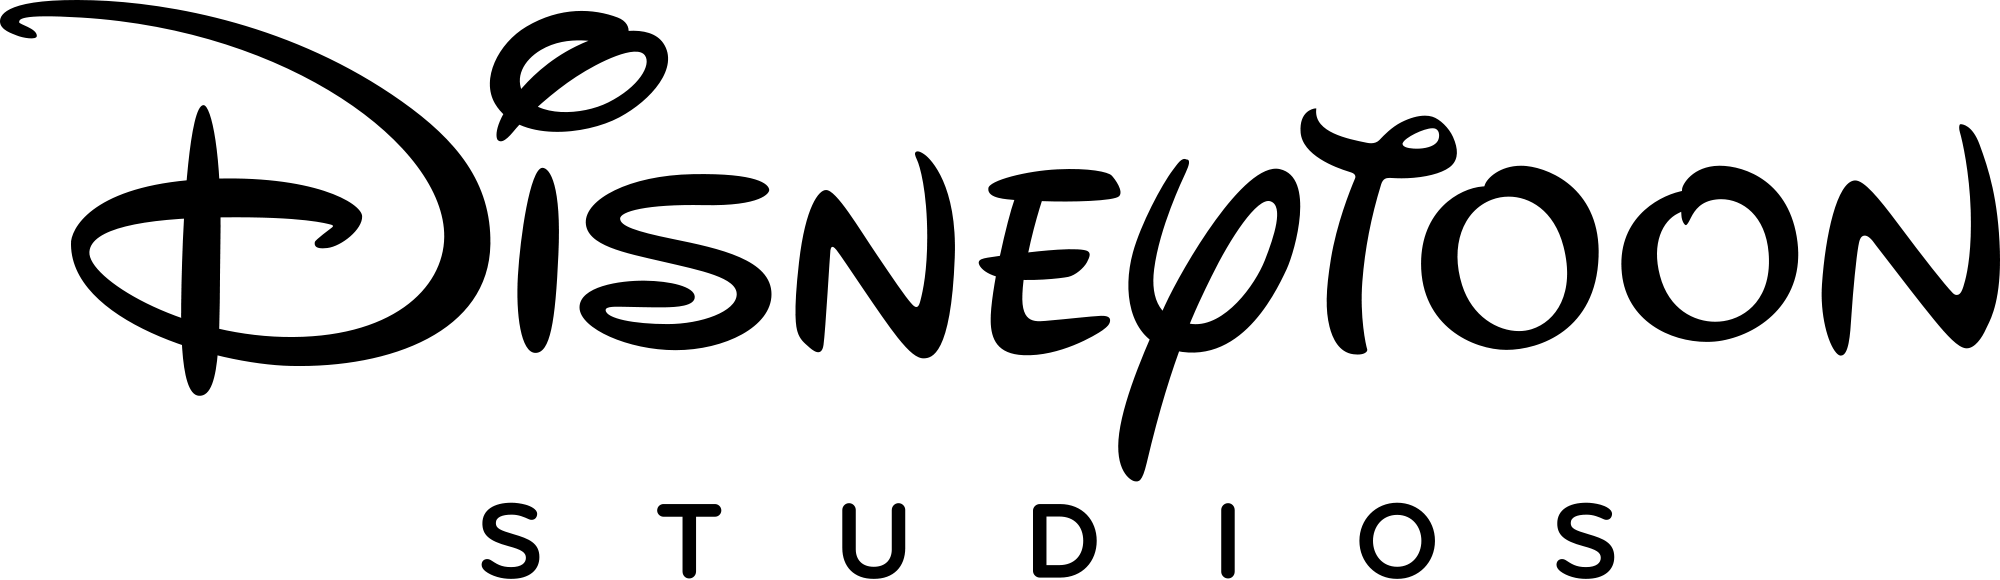 DisneyToon Studios Logo - Disneytoon Studios | Disney Wiki | FANDOM powered by Wikia